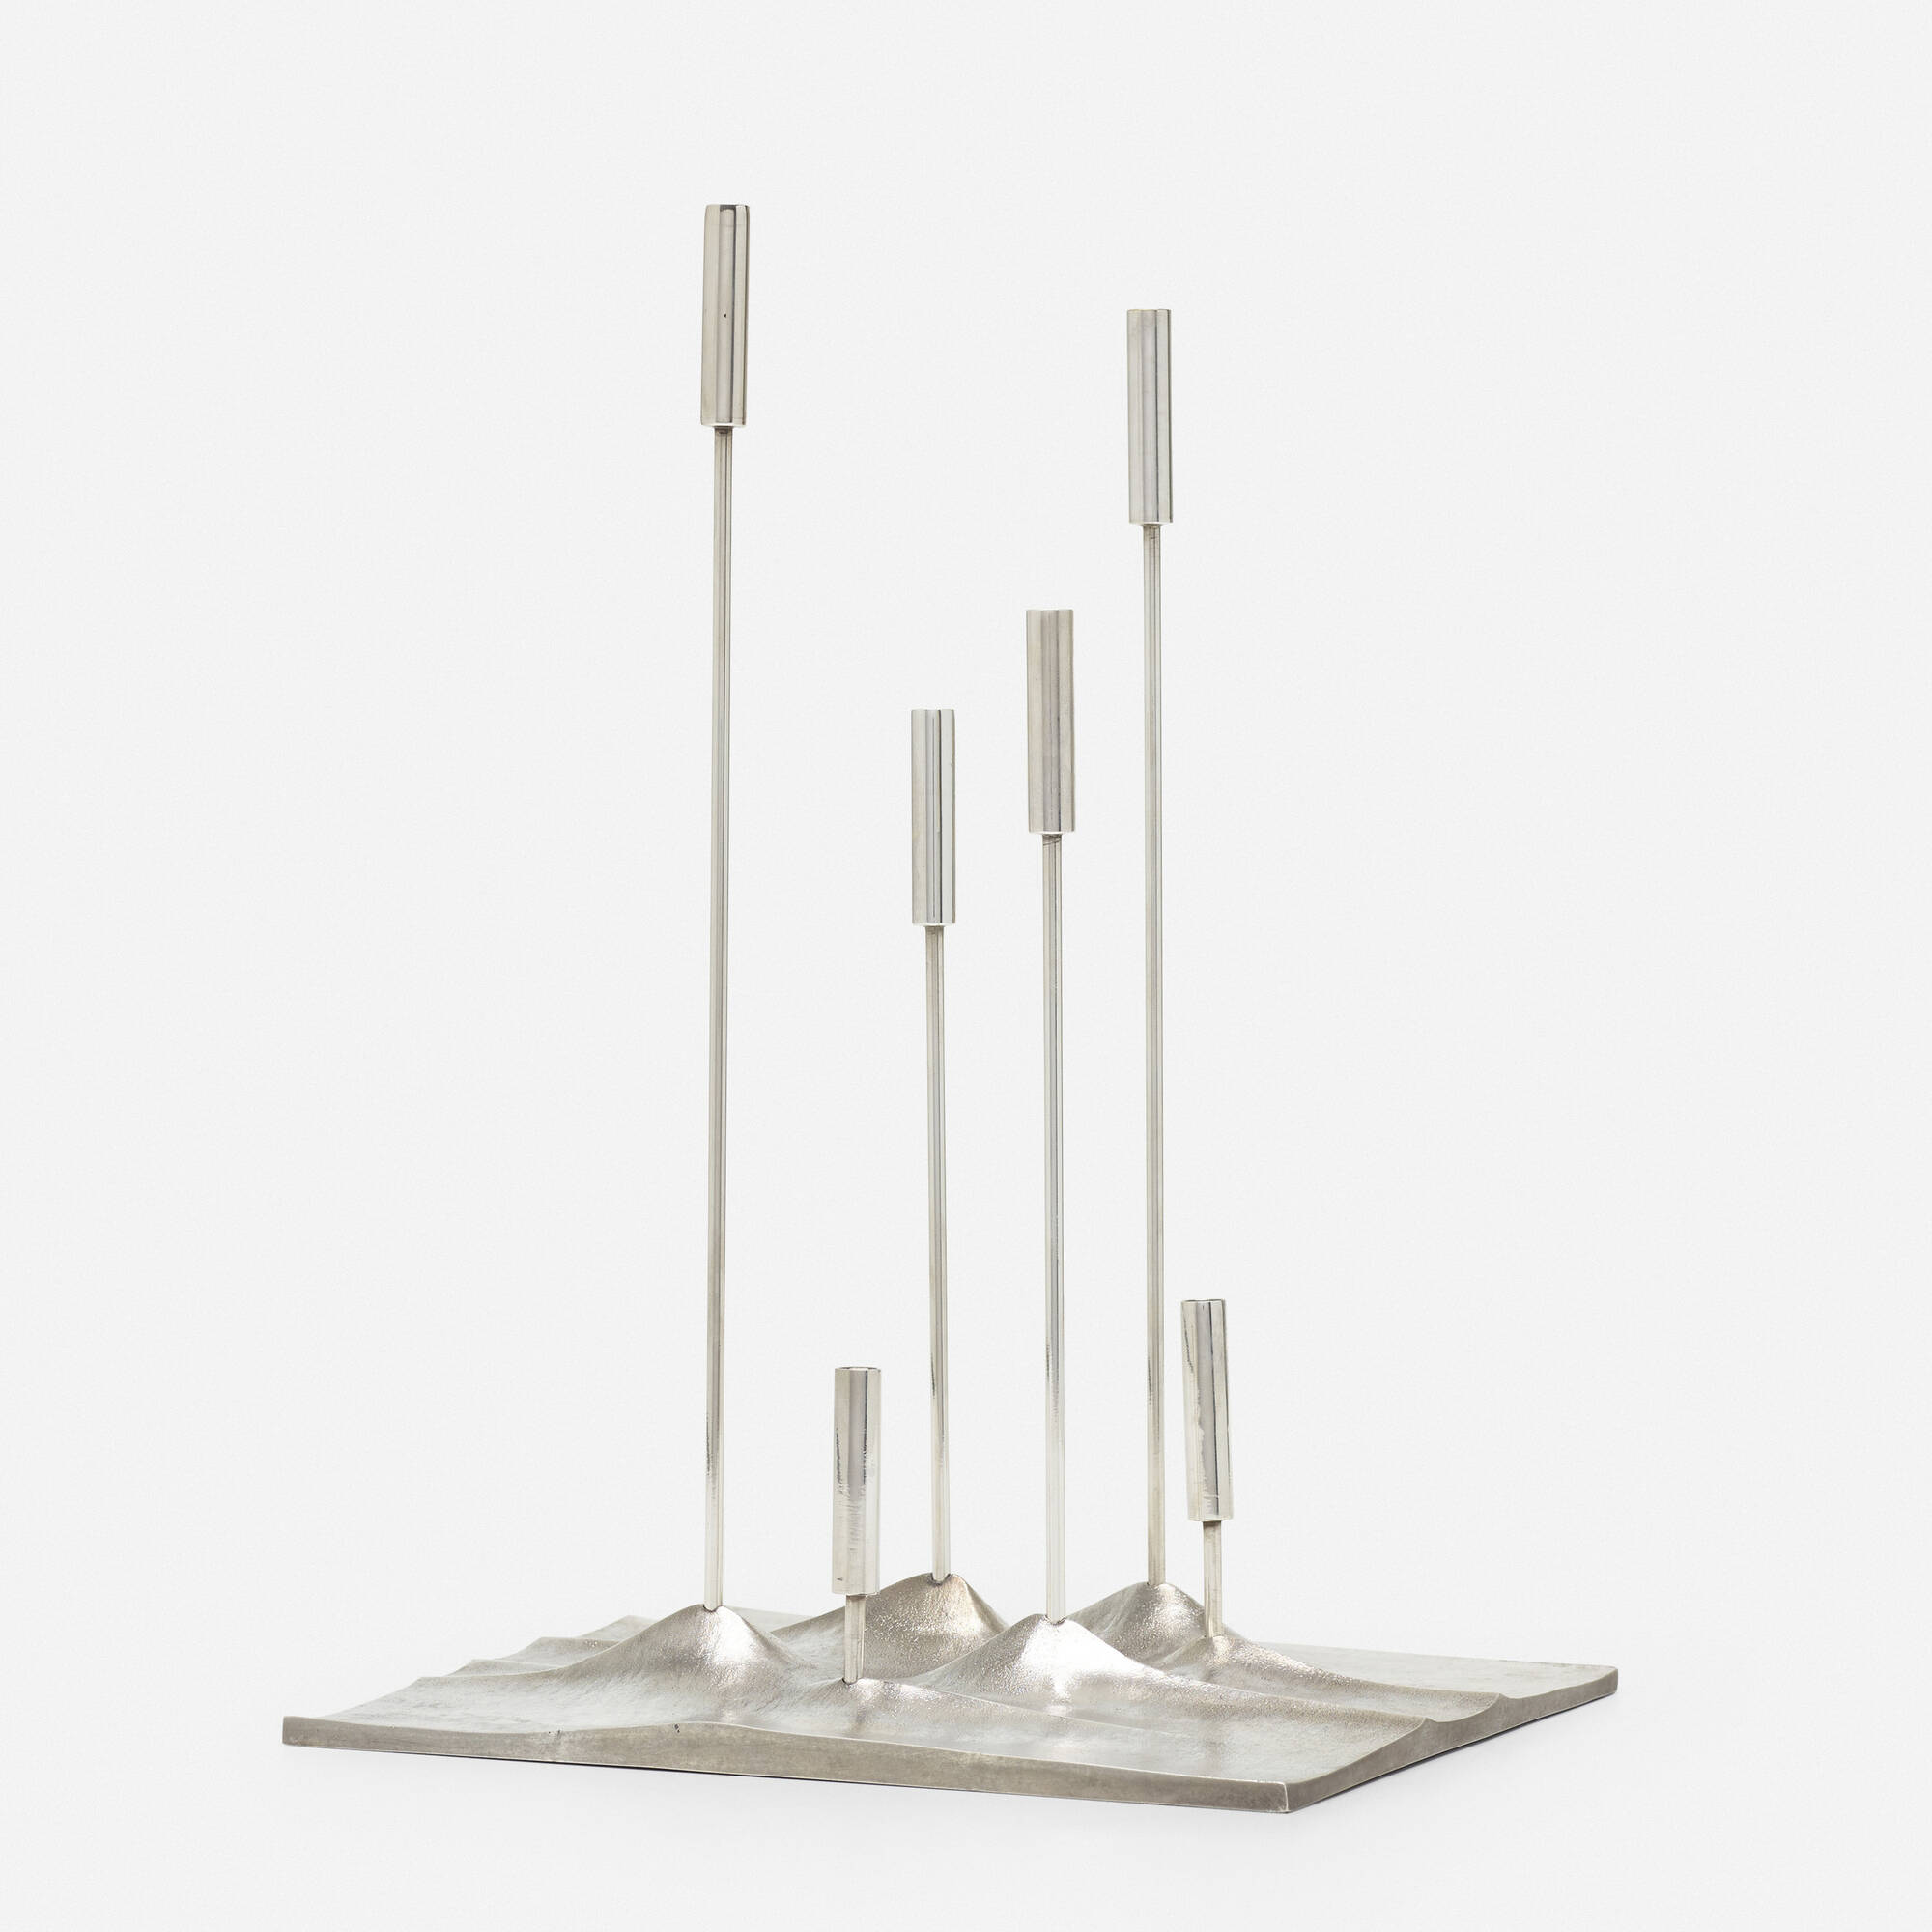 231: JACQUES SITOLEUX, Sol Lunaire candelabrum < Art + Design, 11 February  2021 < Auctions